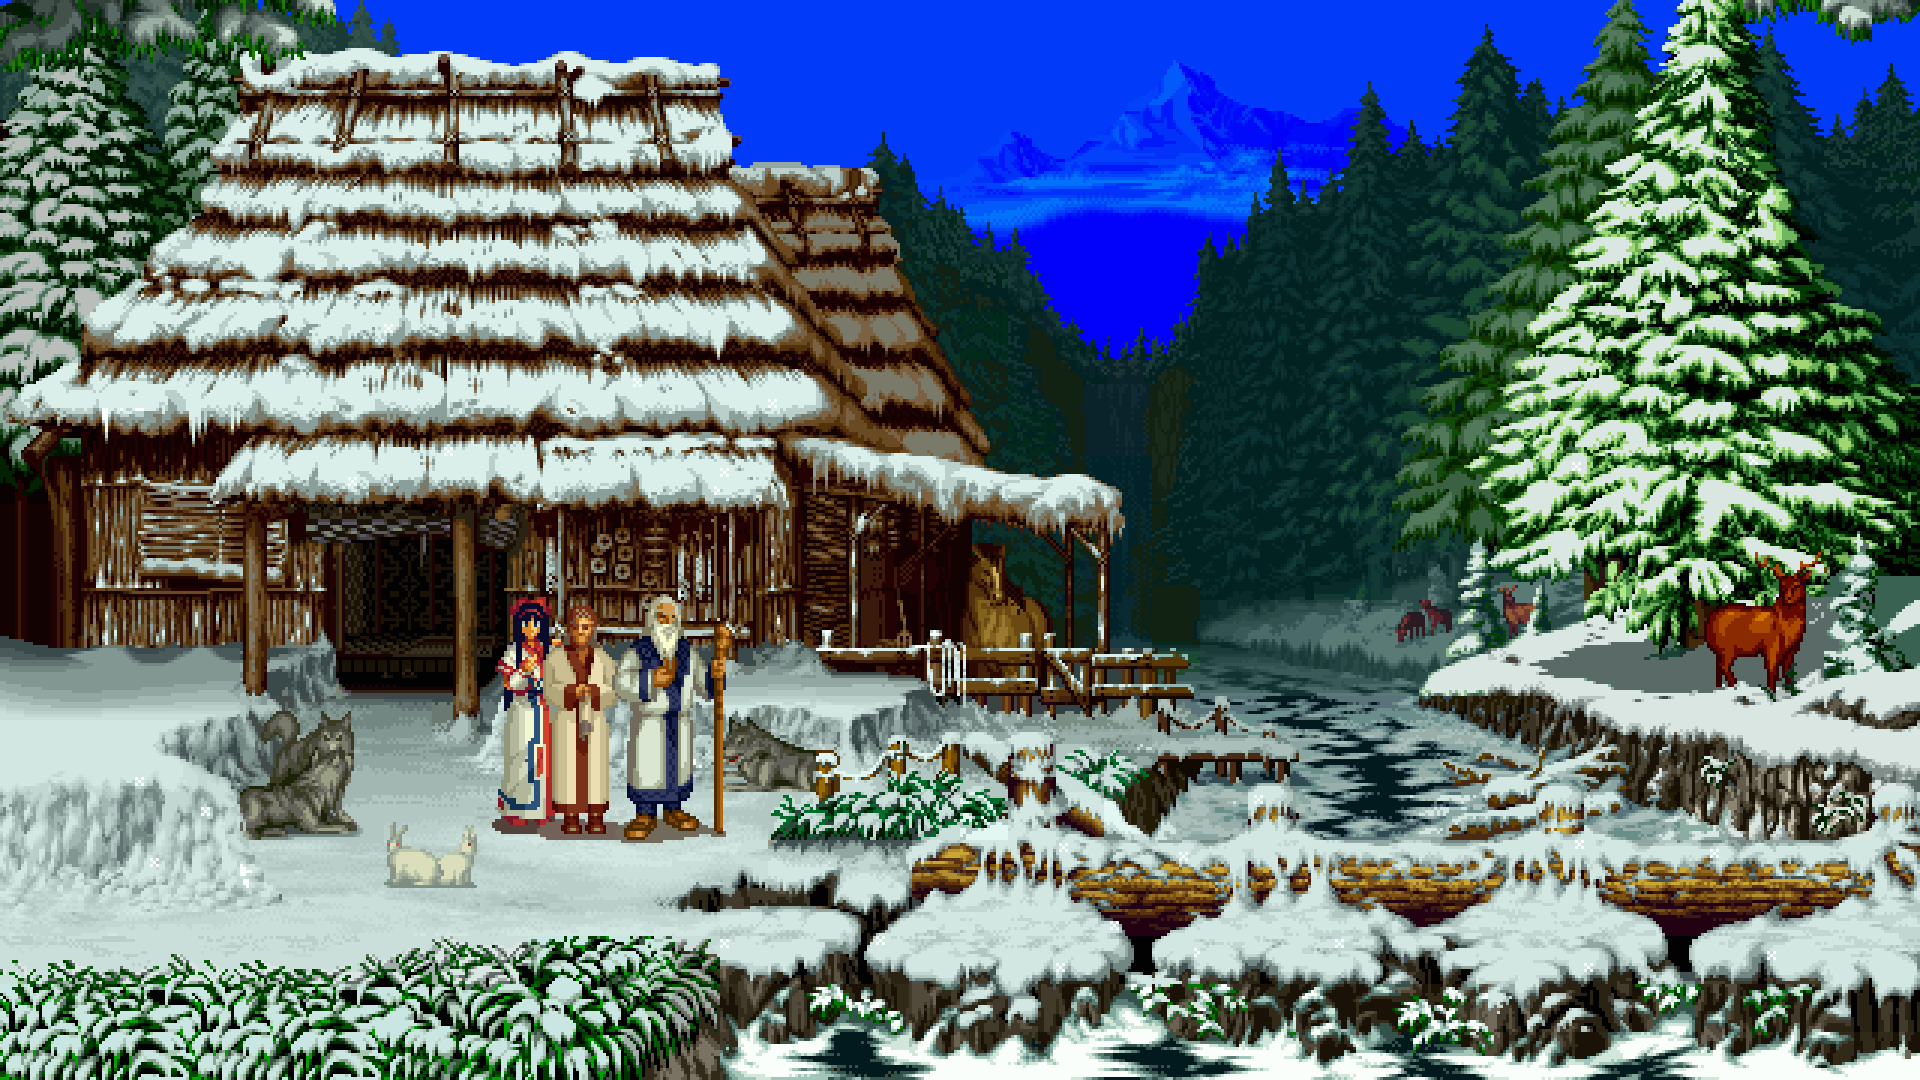 Winter Snow Pixel Art 8-bit 1080p Hd Wallpaper Background - Samurai Shodown 3 Arcade , HD Wallpaper & Backgrounds